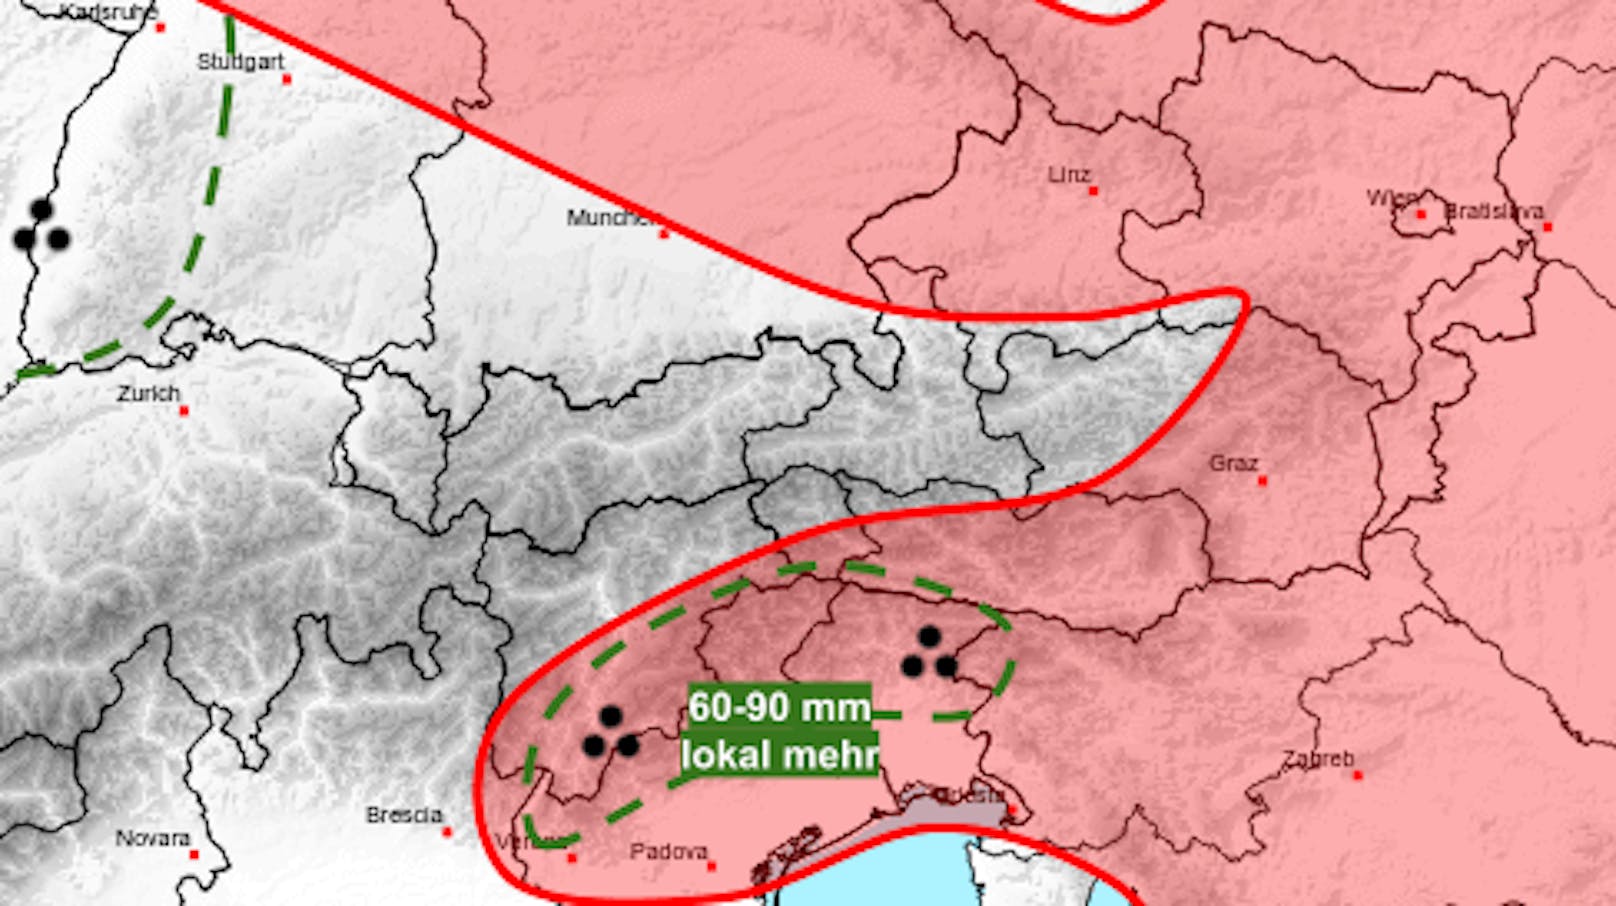 Die Abendprognose vom frühen Nachmittag: In diesen Regionen drohen Starkregen (grün) und kräftige Gewitter (rot).